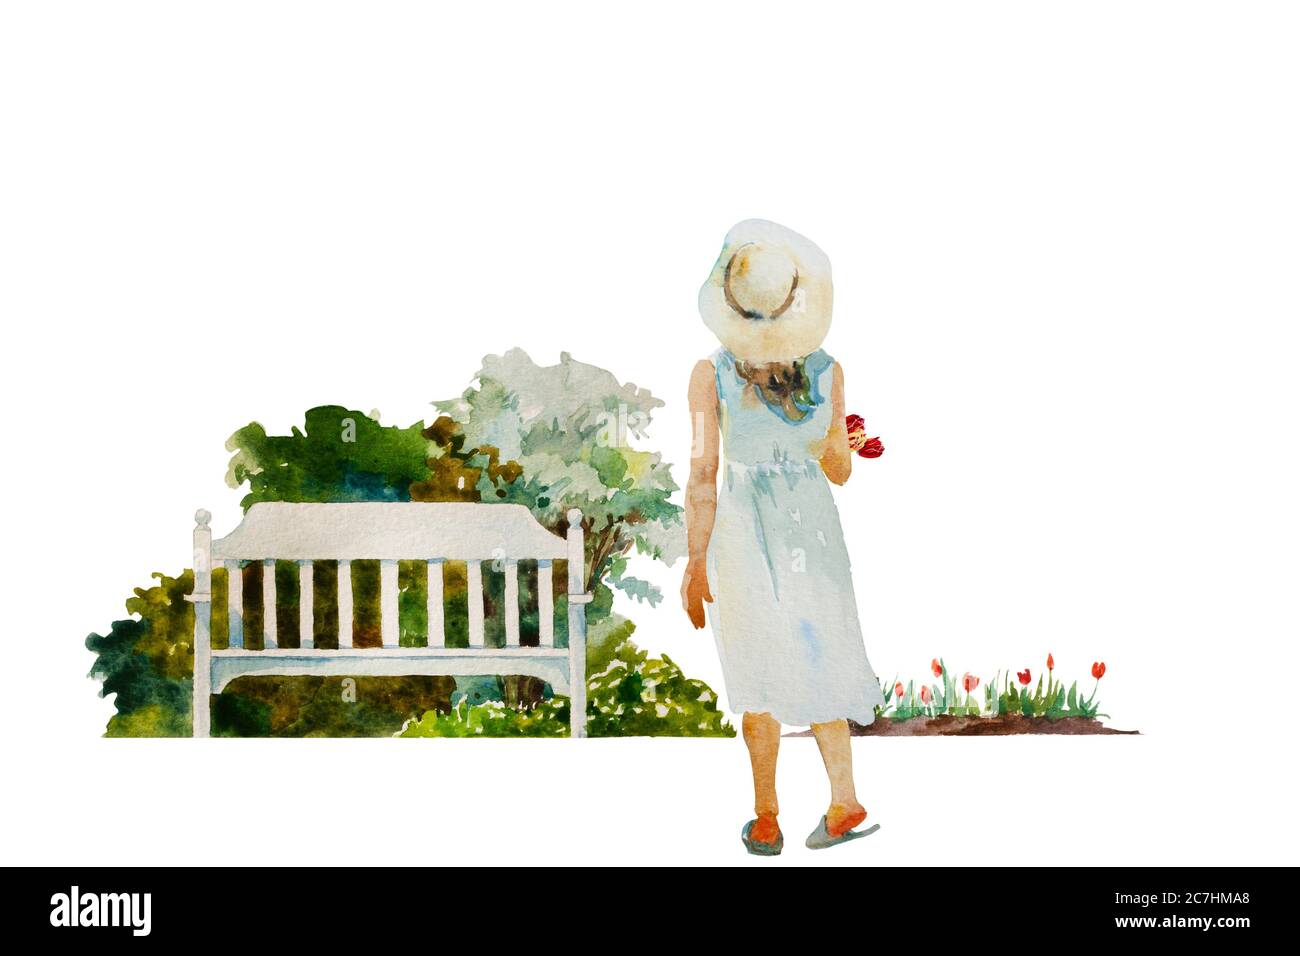 Giovane ragazza con tulipani torna a watcher andando alla panchina del giardino. Originale acquerello primavera giardinaggio illustrazione Foto Stock